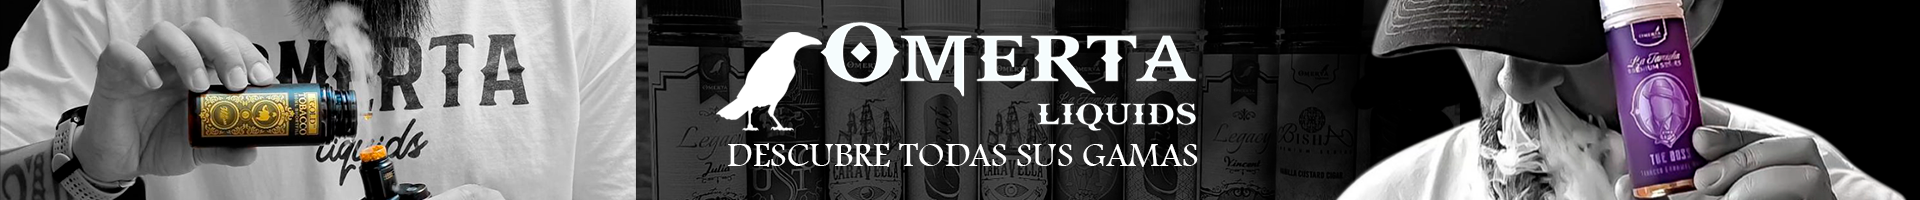 banner-omerta-e-liquids-76129